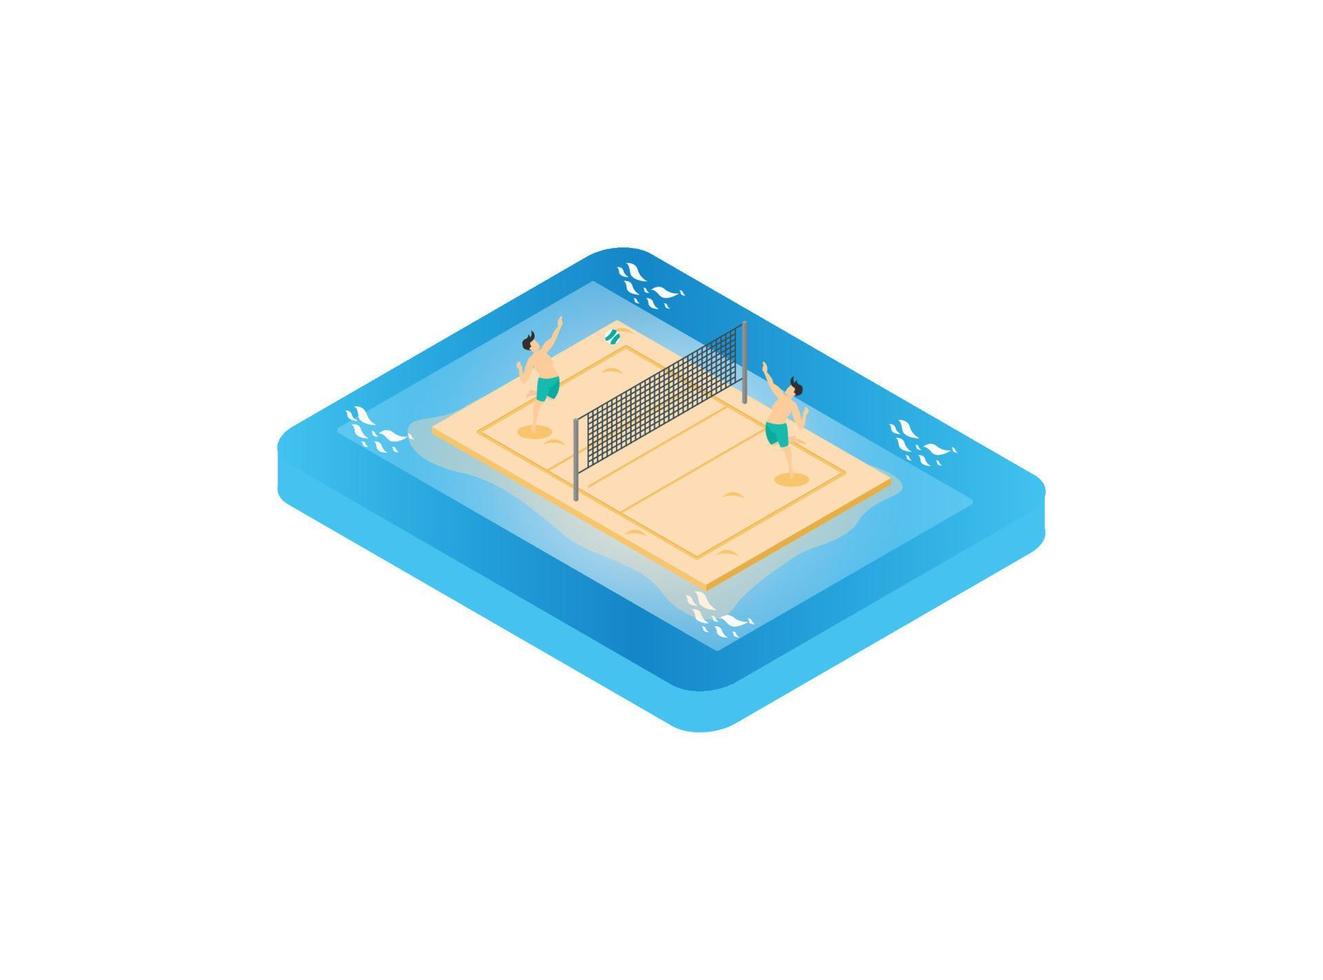 Cancha de voleibol de playa isométrica 3d. ilustración isométrica vectorial adecuada para diagramas, infografías y otros activos gráficos vector